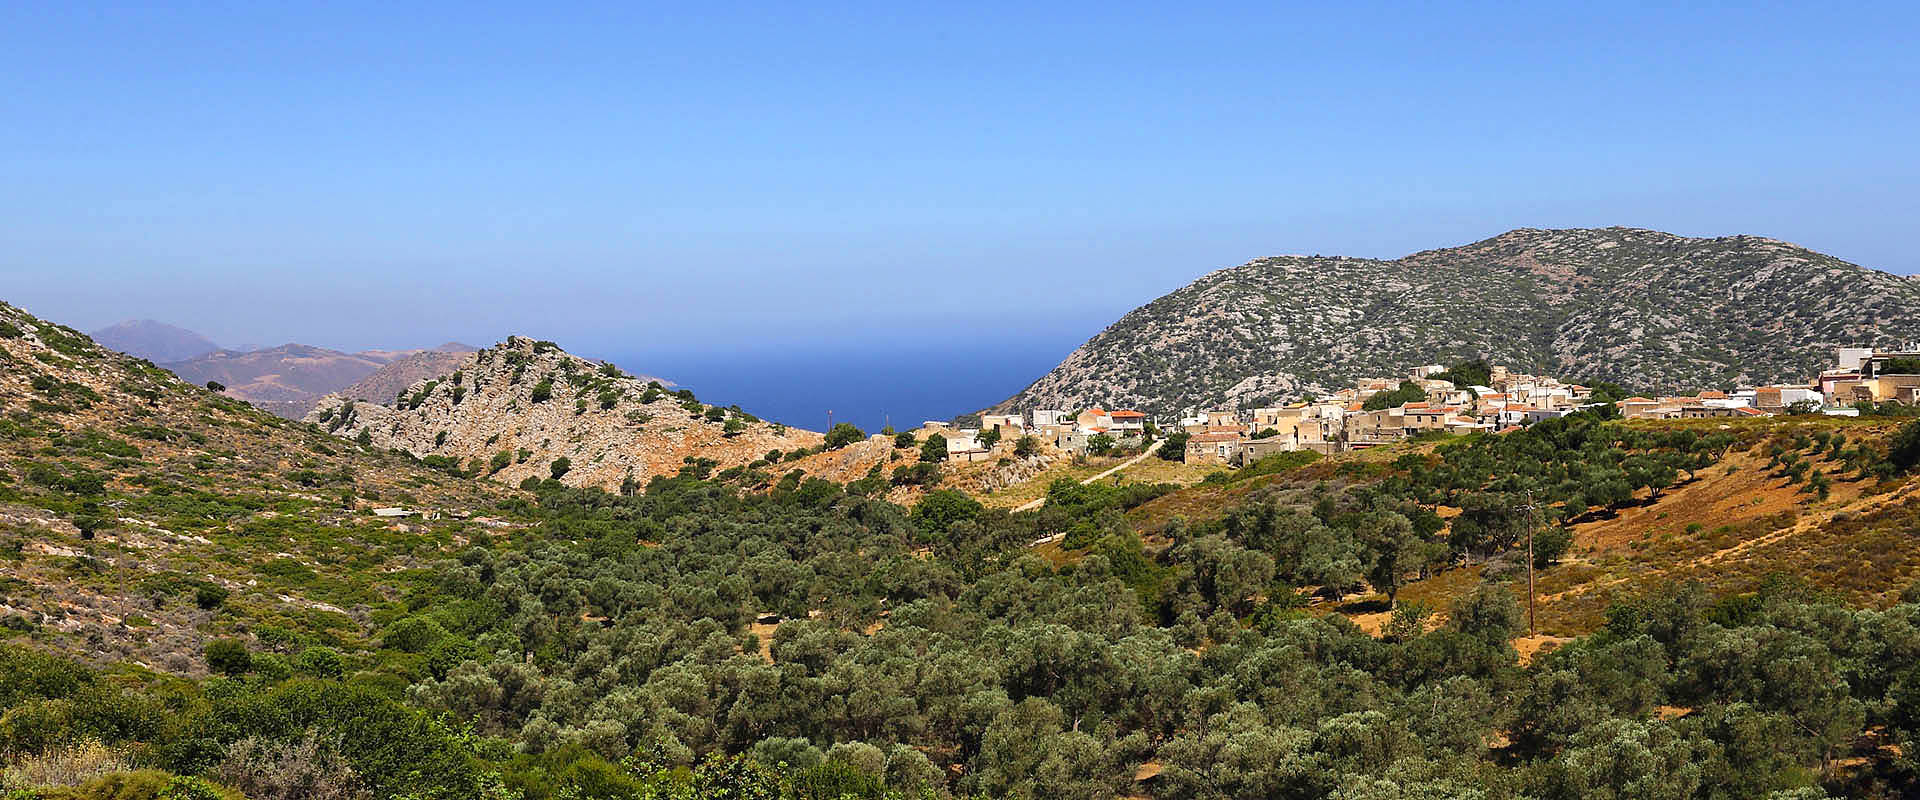 Νησί Κρήτης: ξενοδοχείο οικοτουρισμού Μουρτζανάκης